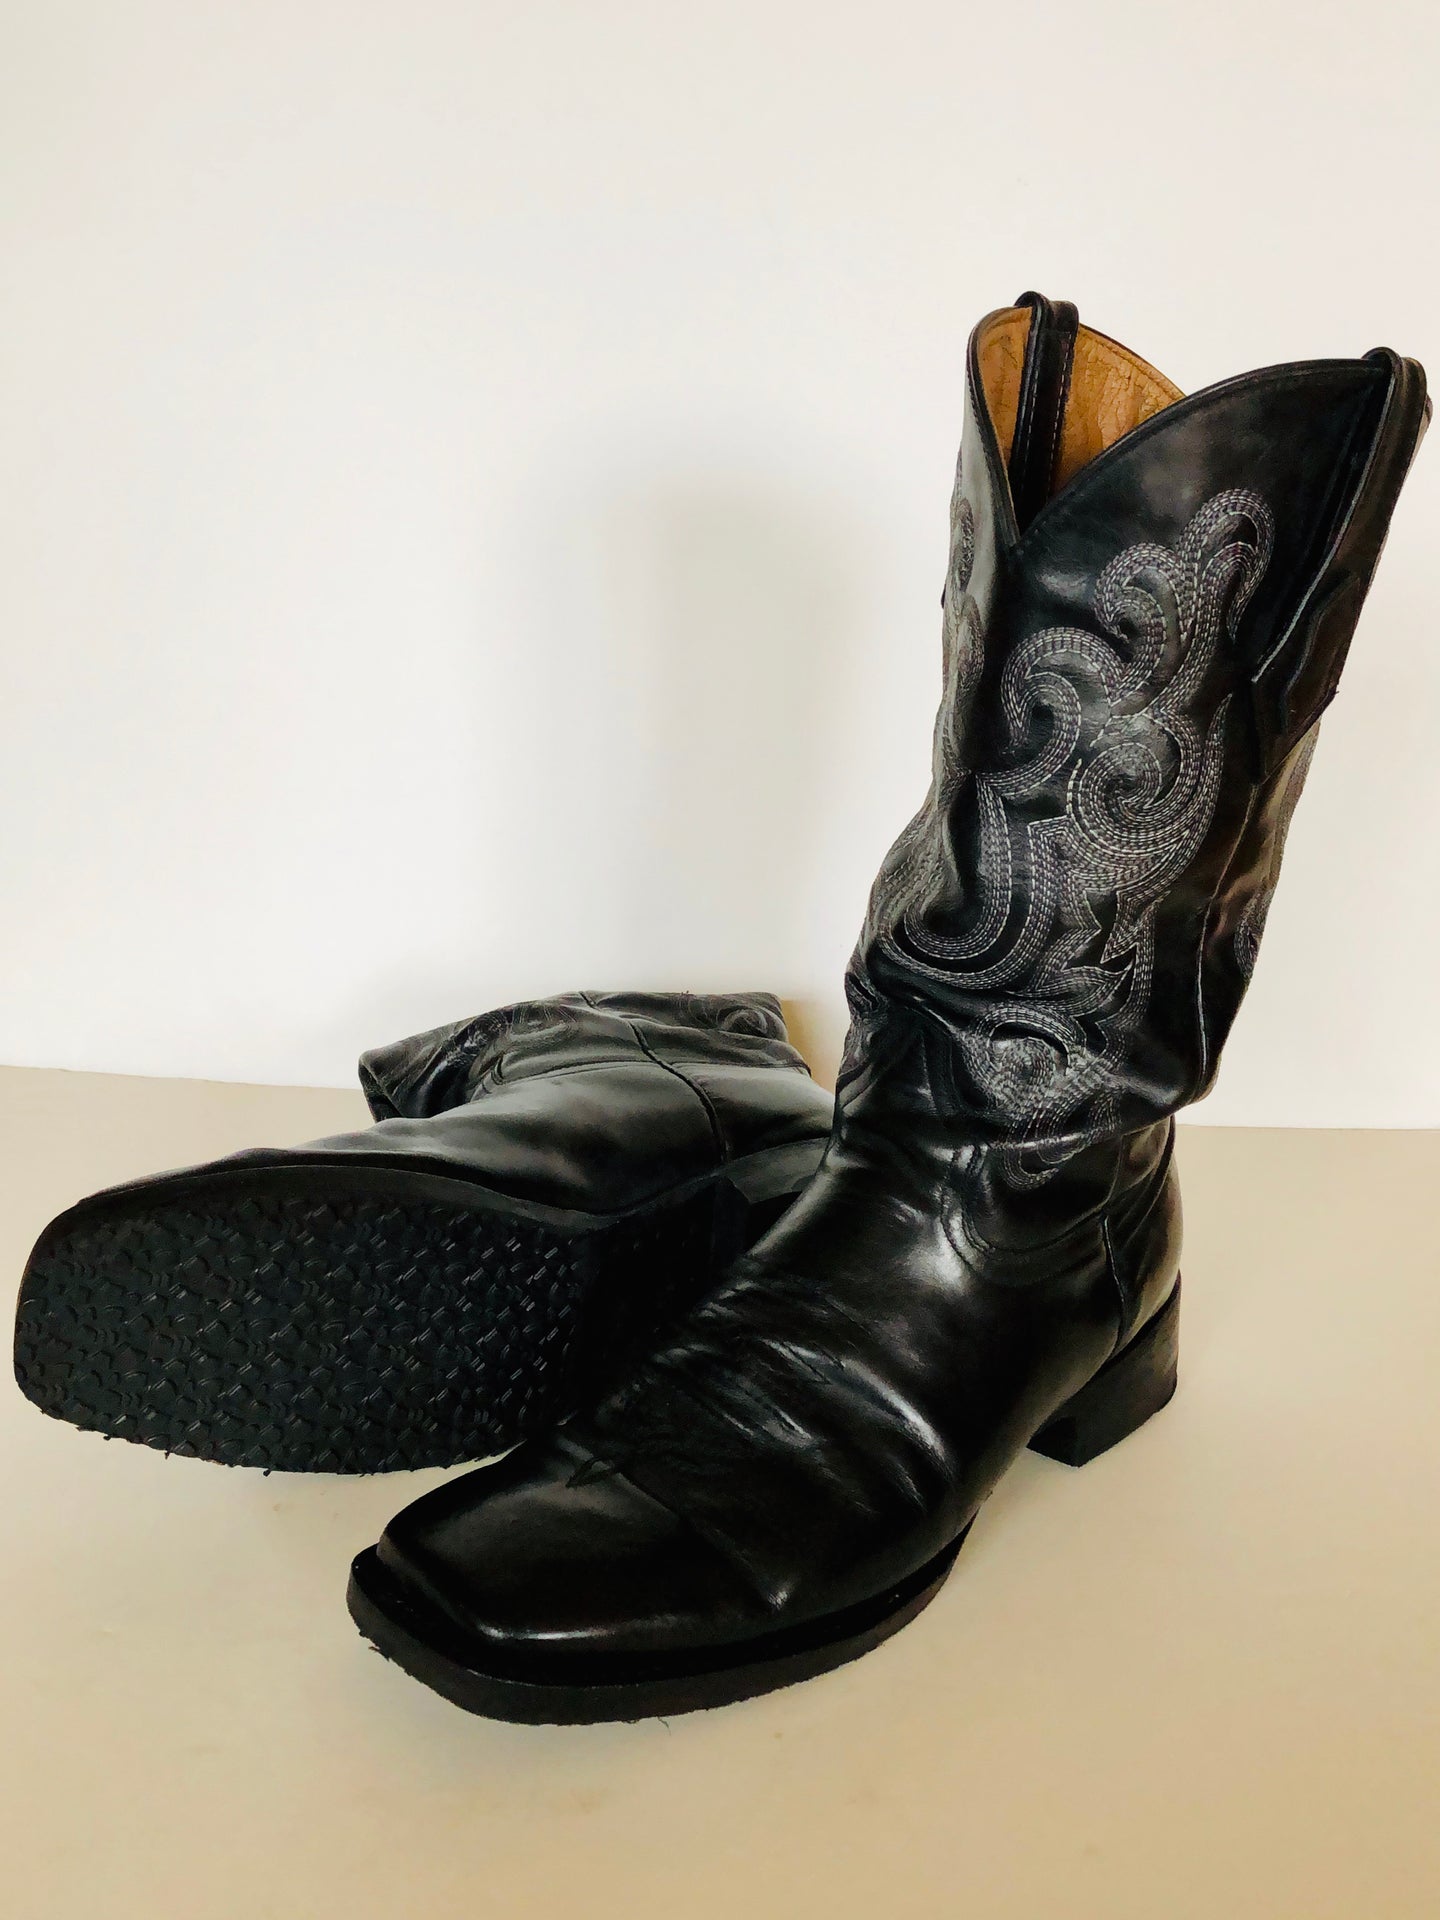 Cowboy boot repair